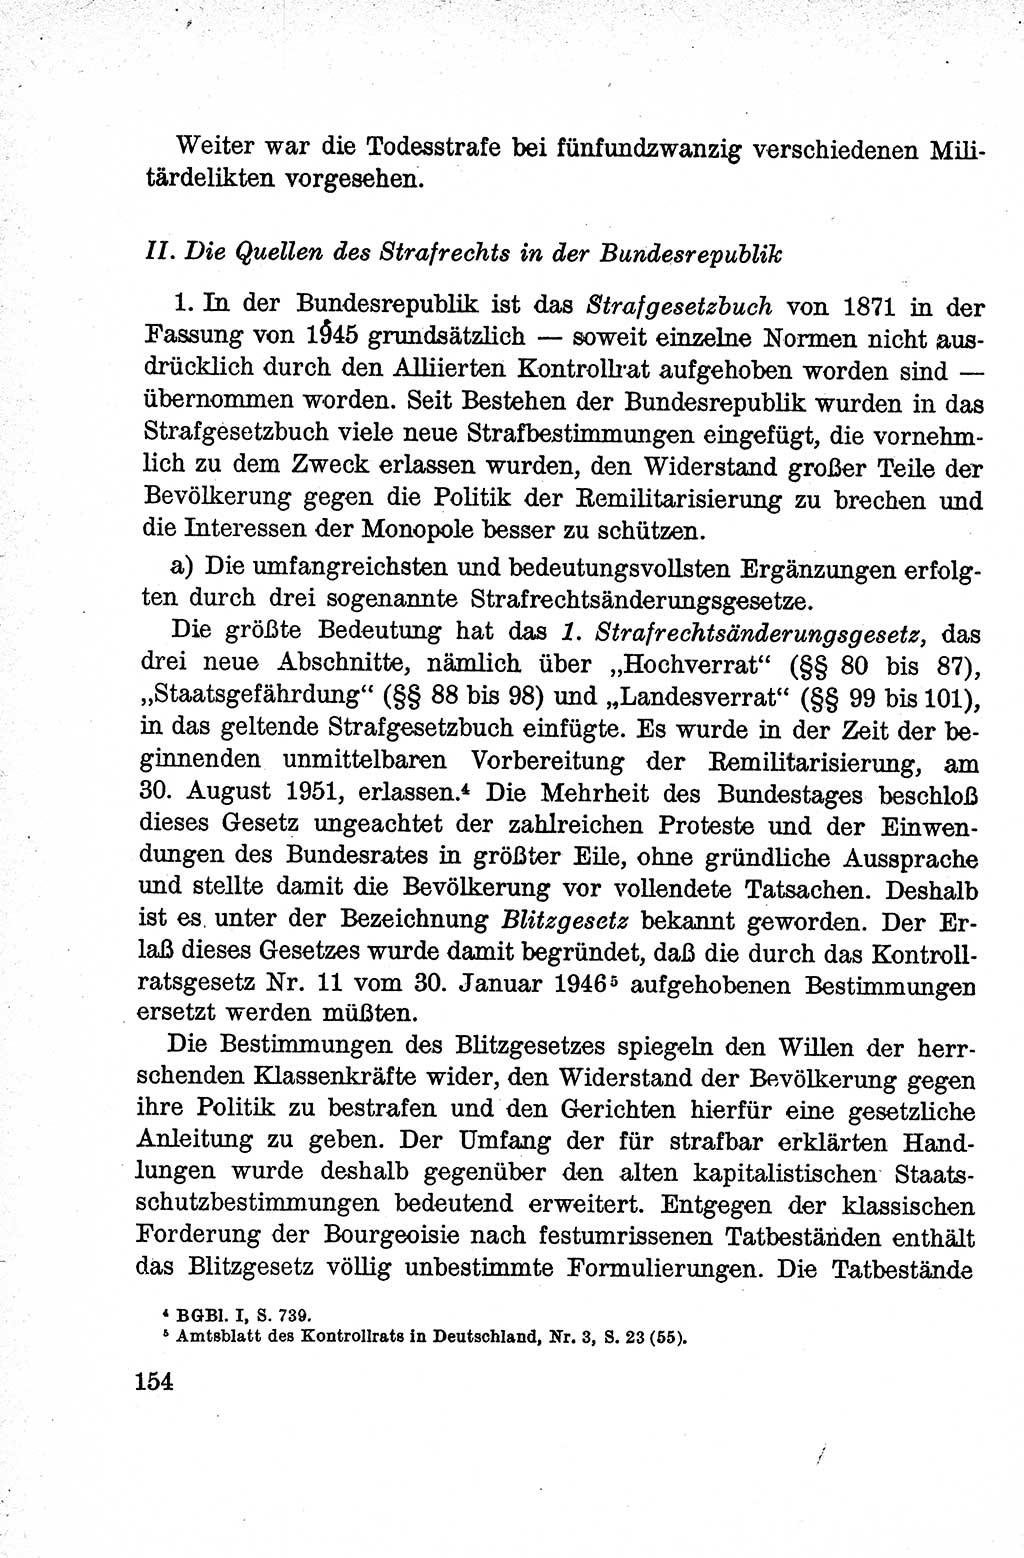 Lehrbuch des Strafrechts der Deutschen Demokratischen Republik (DDR), Allgemeiner Teil 1959, Seite 154 (Lb. Strafr. DDR AT 1959, S. 154)